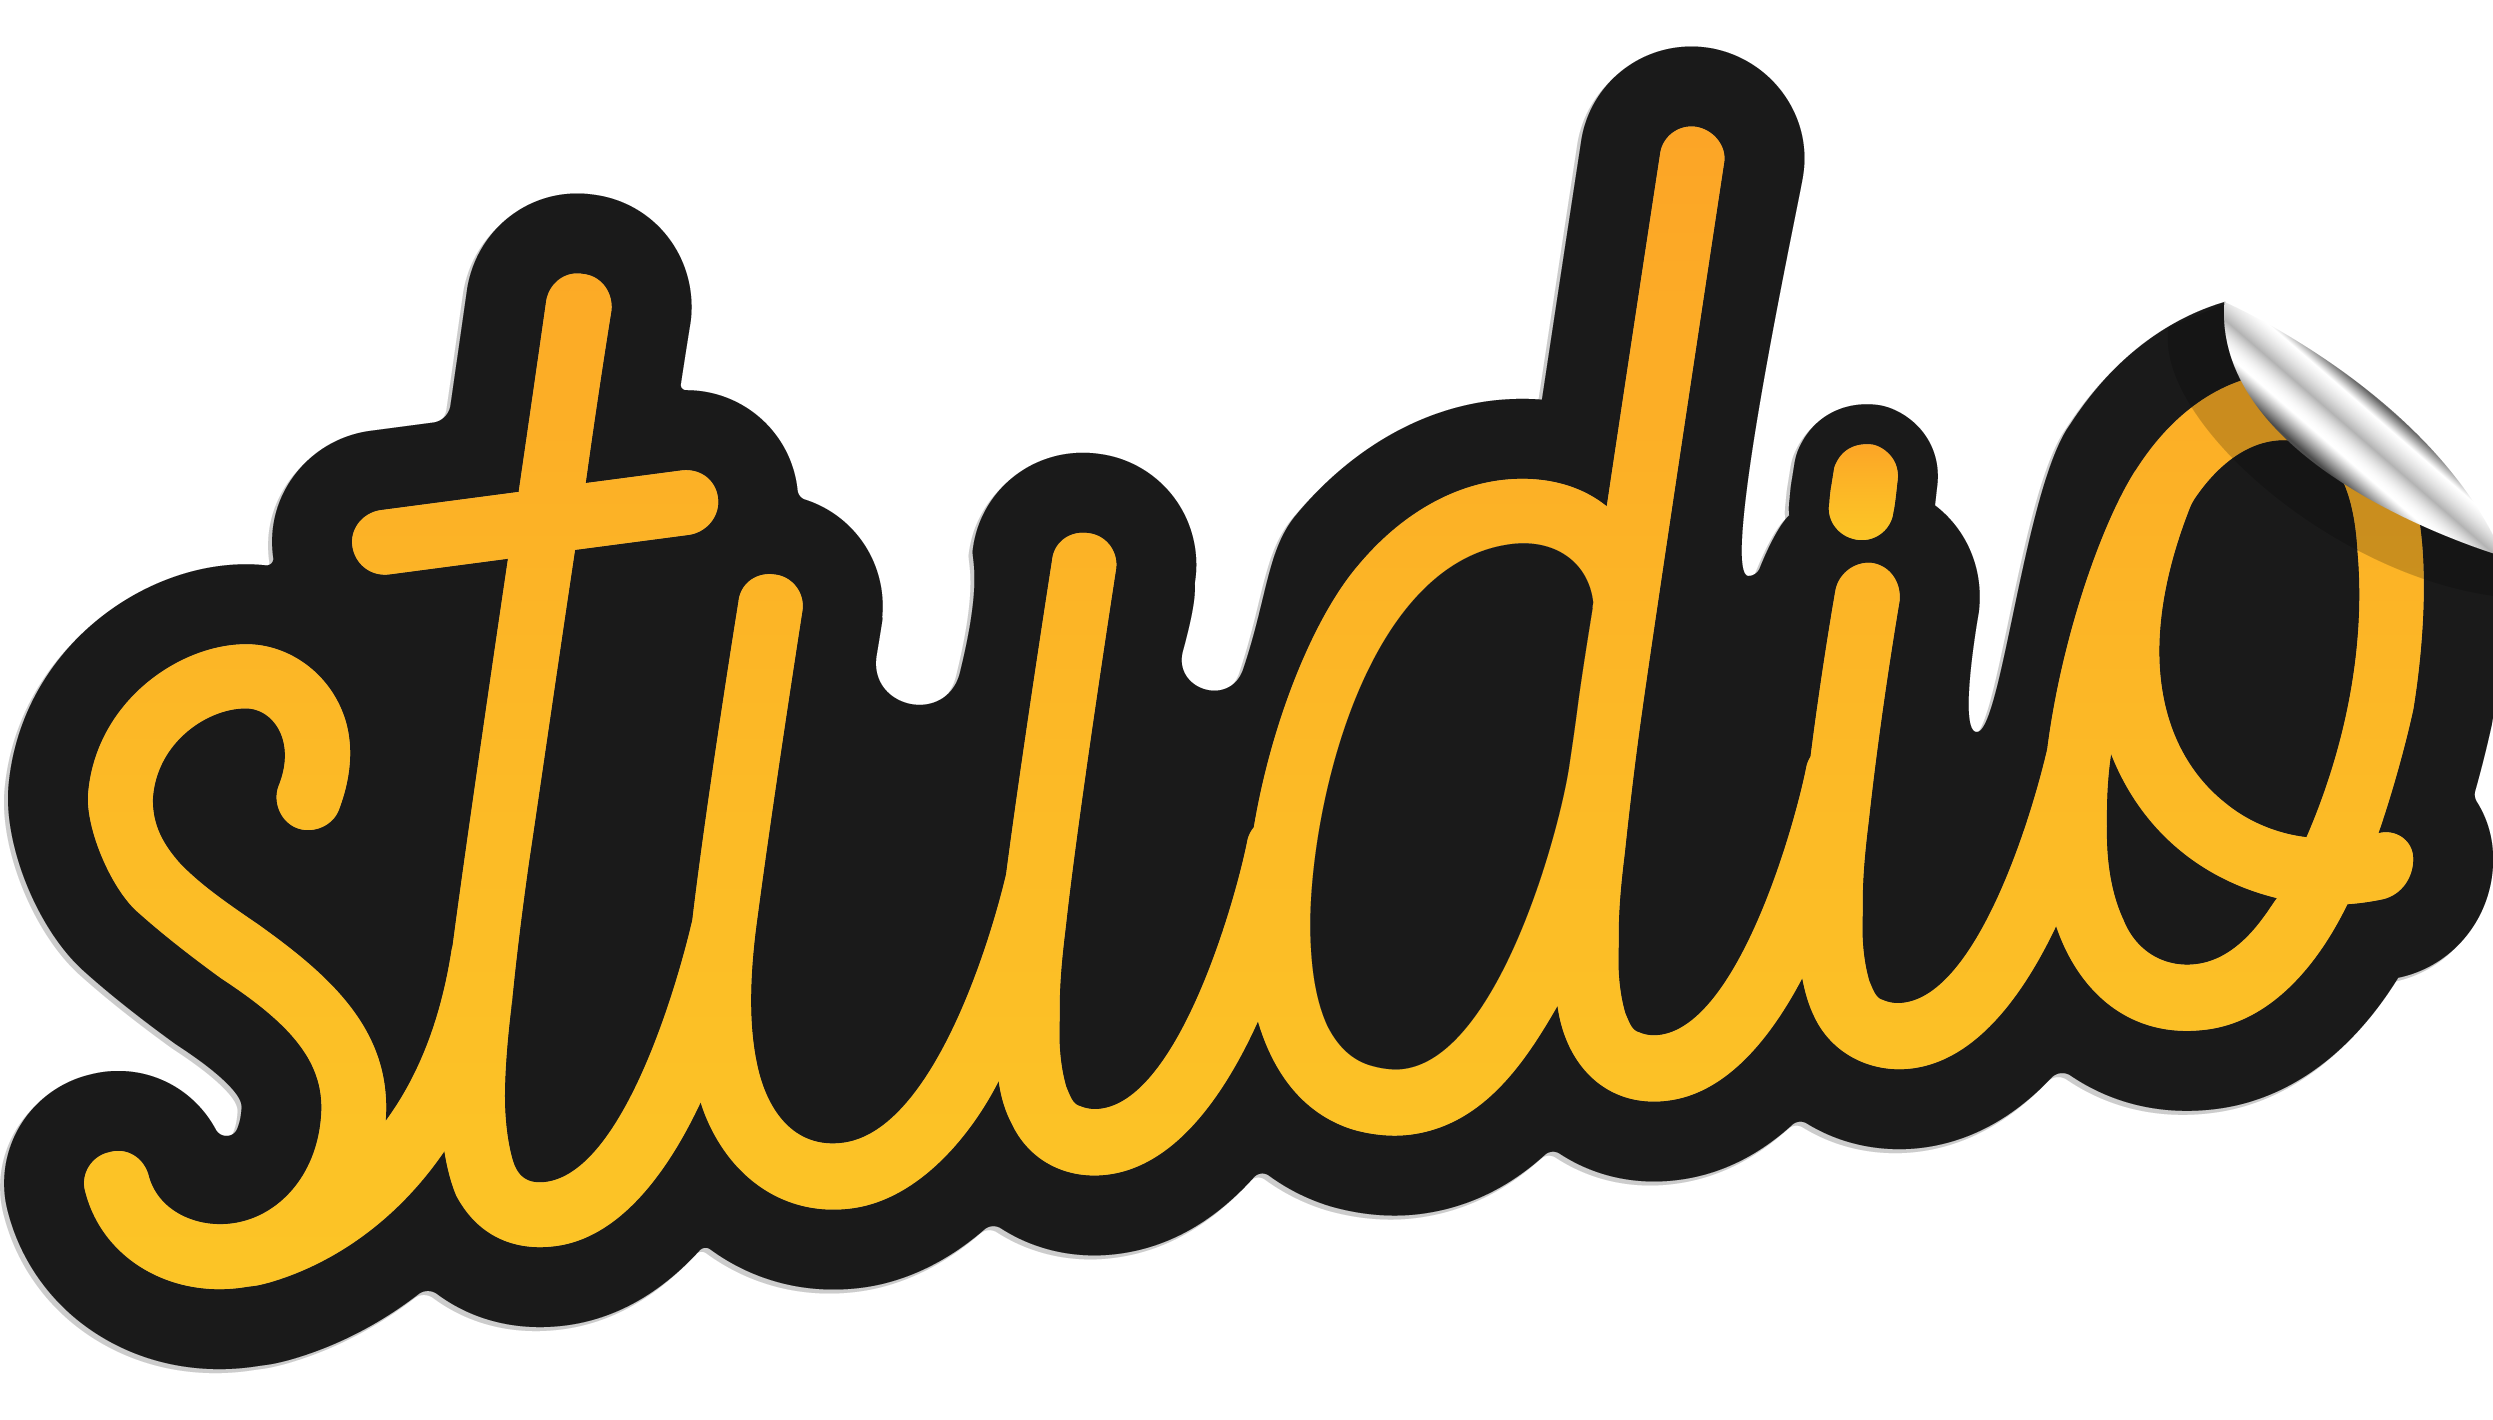 datashake studio